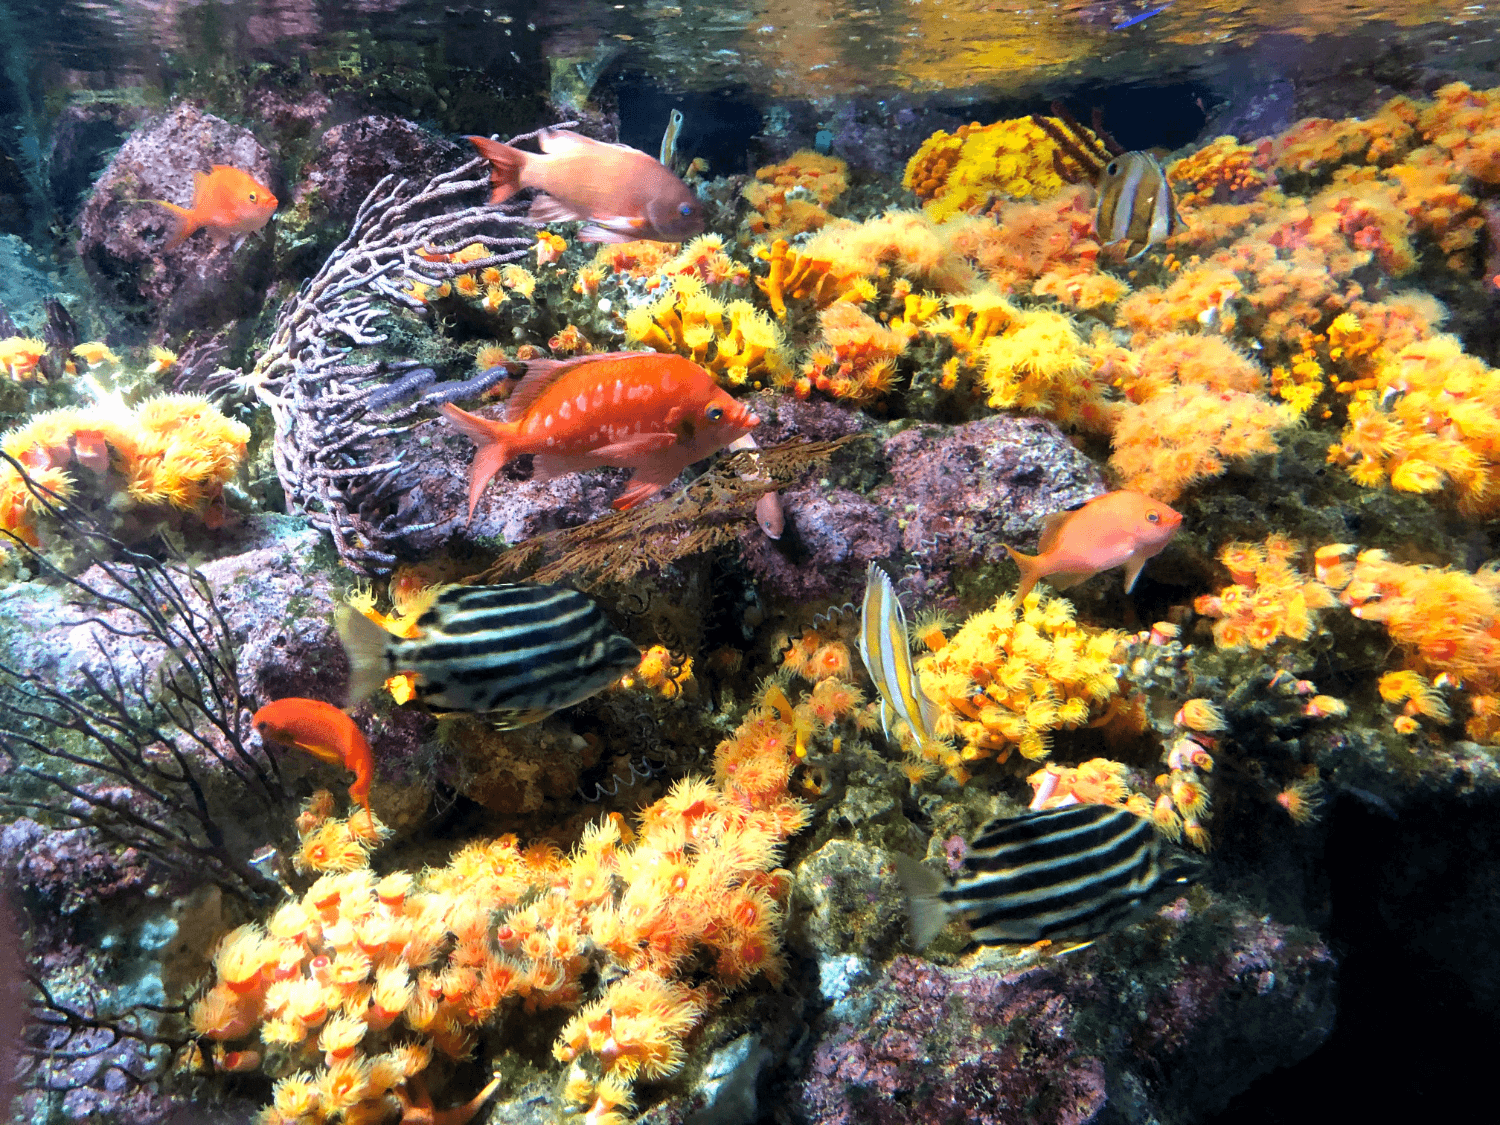 Fish Tank in Enoshima Aquarium featuring Kuroshio Marine Life